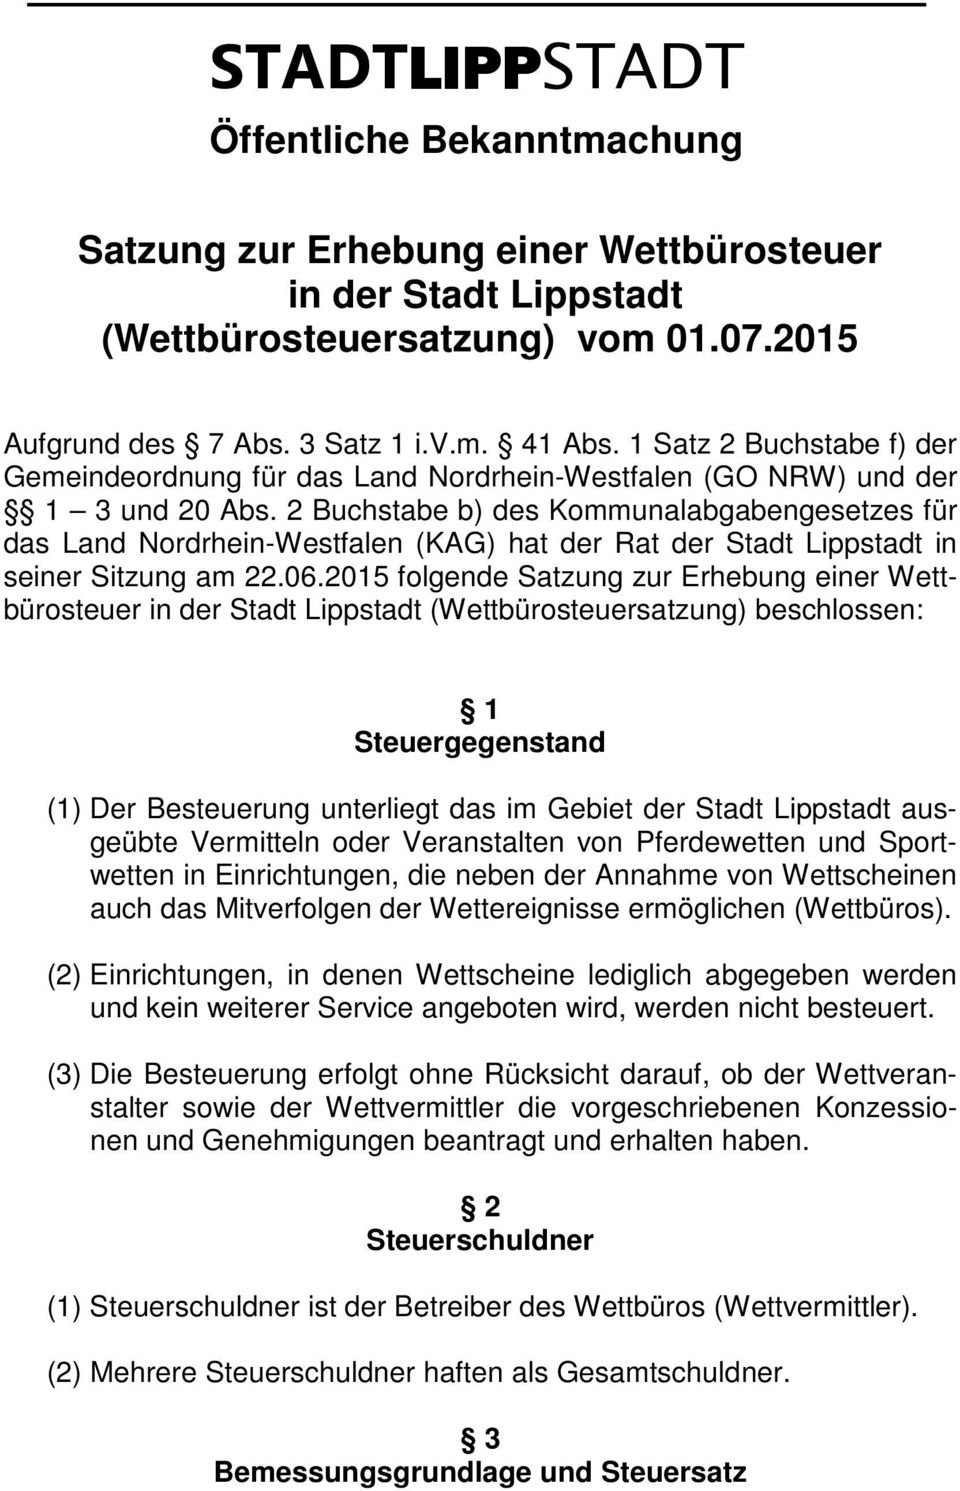 2 Buchstabe b) des Kommunalabgabengesetzes für das Land Nordrhein-Westfalen (KAG) hat der Rat der Stadt Lippstadt in seiner Sitzung am 22.06.